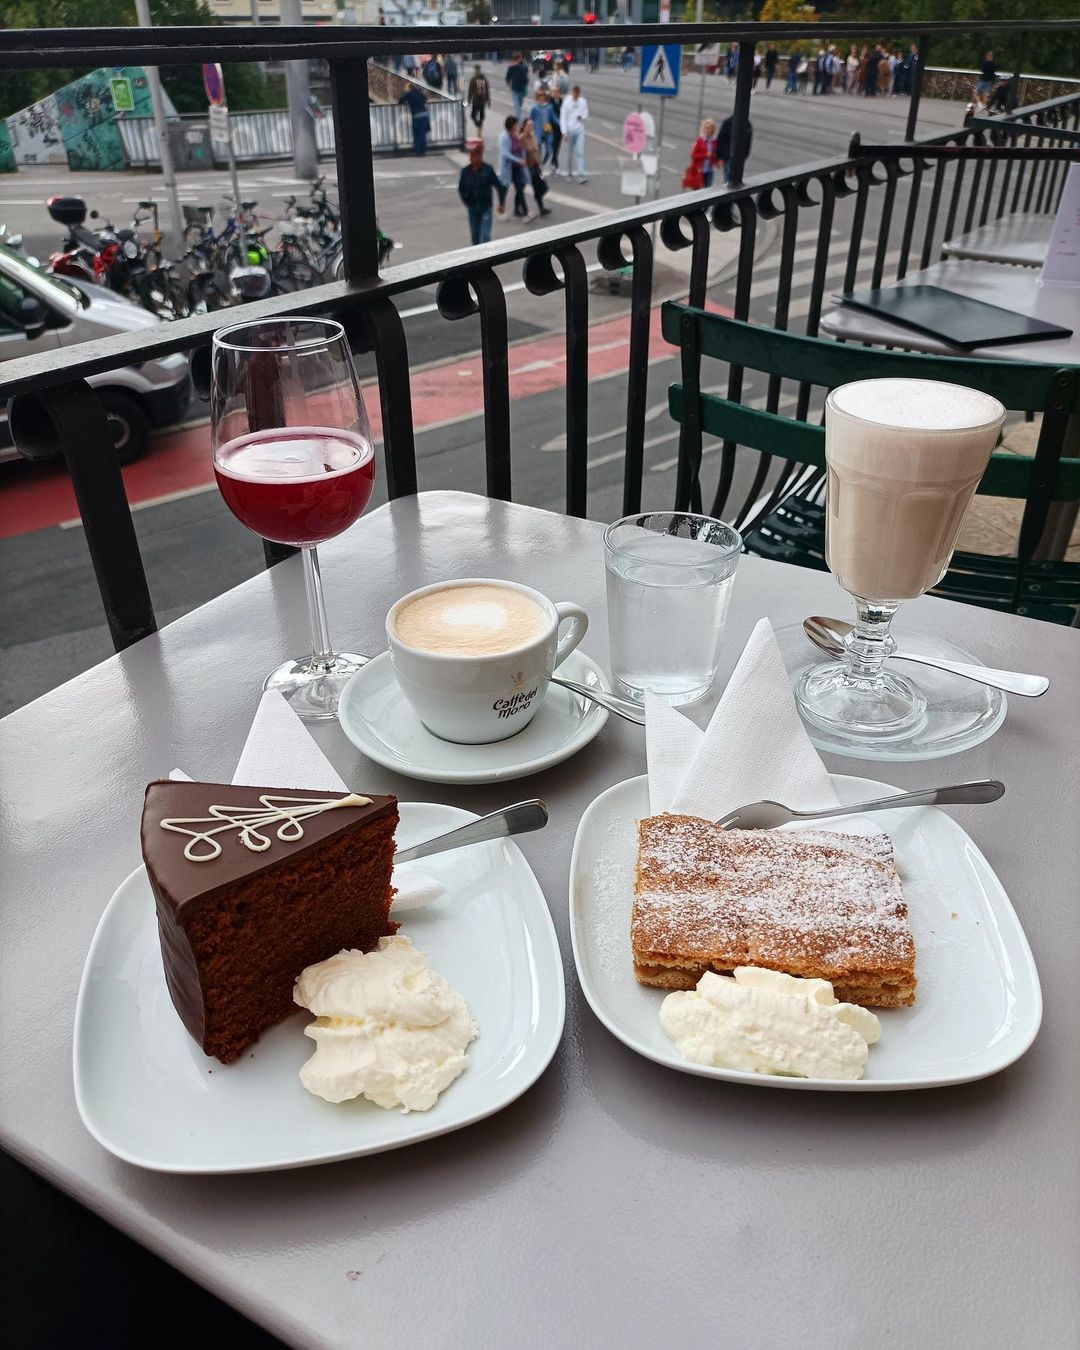 Kaffe und Kuchen im Café Schwalbennest. Ein Wein, genannt Sturm, Schokoladenkuchen und heißer Kakao und Waffeln mit Sahne auf einem kleinen Tisch im Freien.